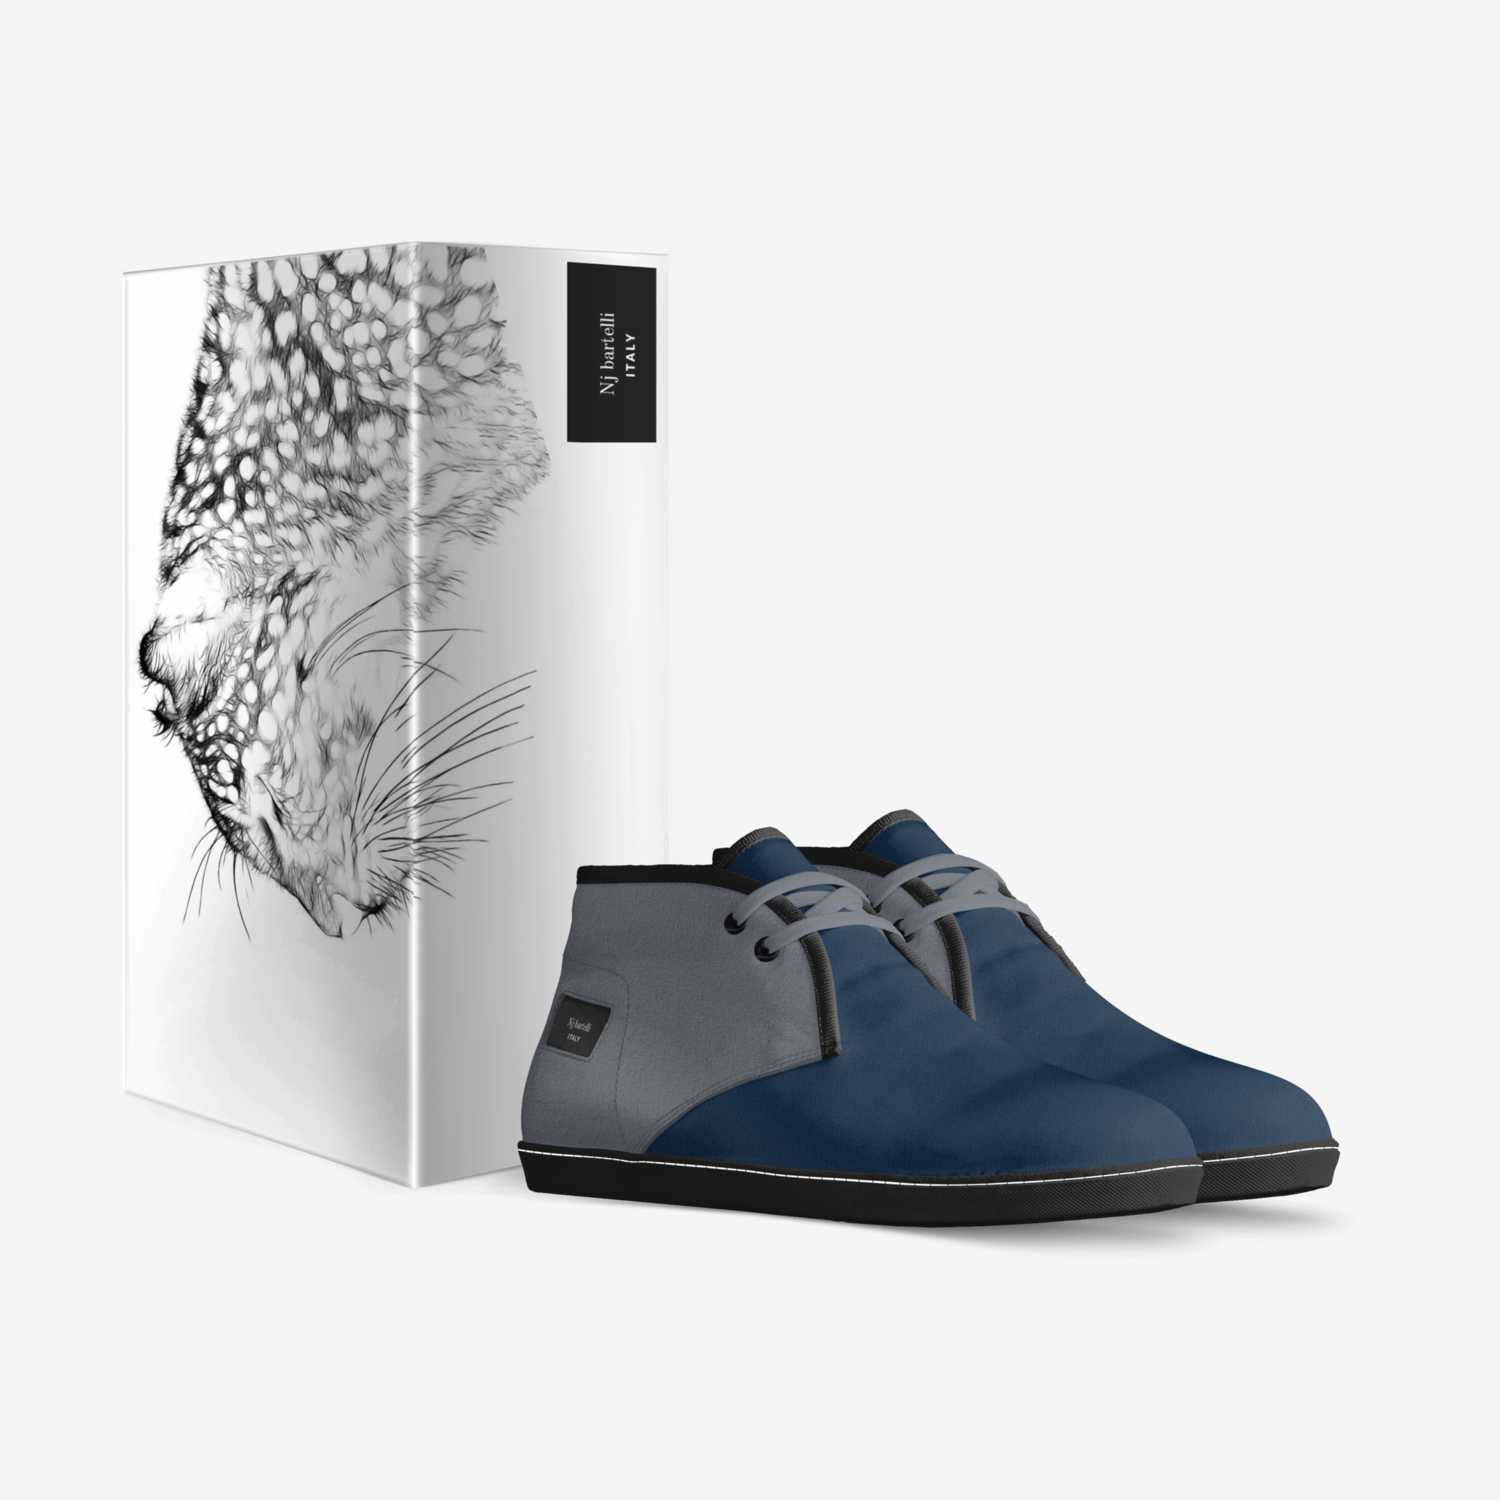 Nj bartelli custom made in Italy shoes by Tatjana Marjanovic | Box view